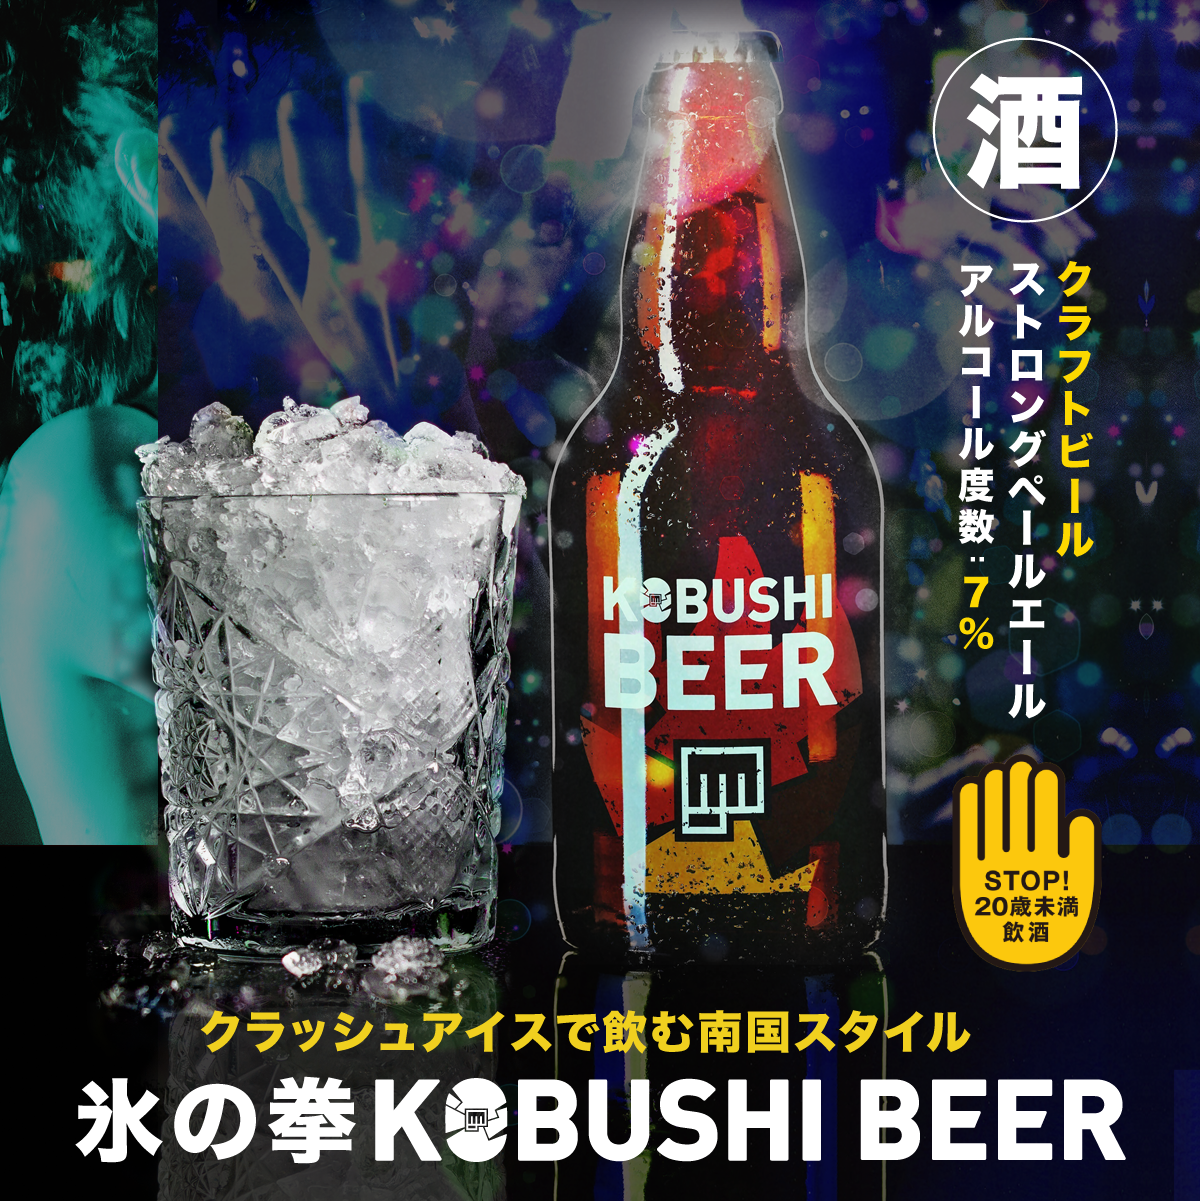 Kobushi Beer 氷の拳 Kobushi Beer